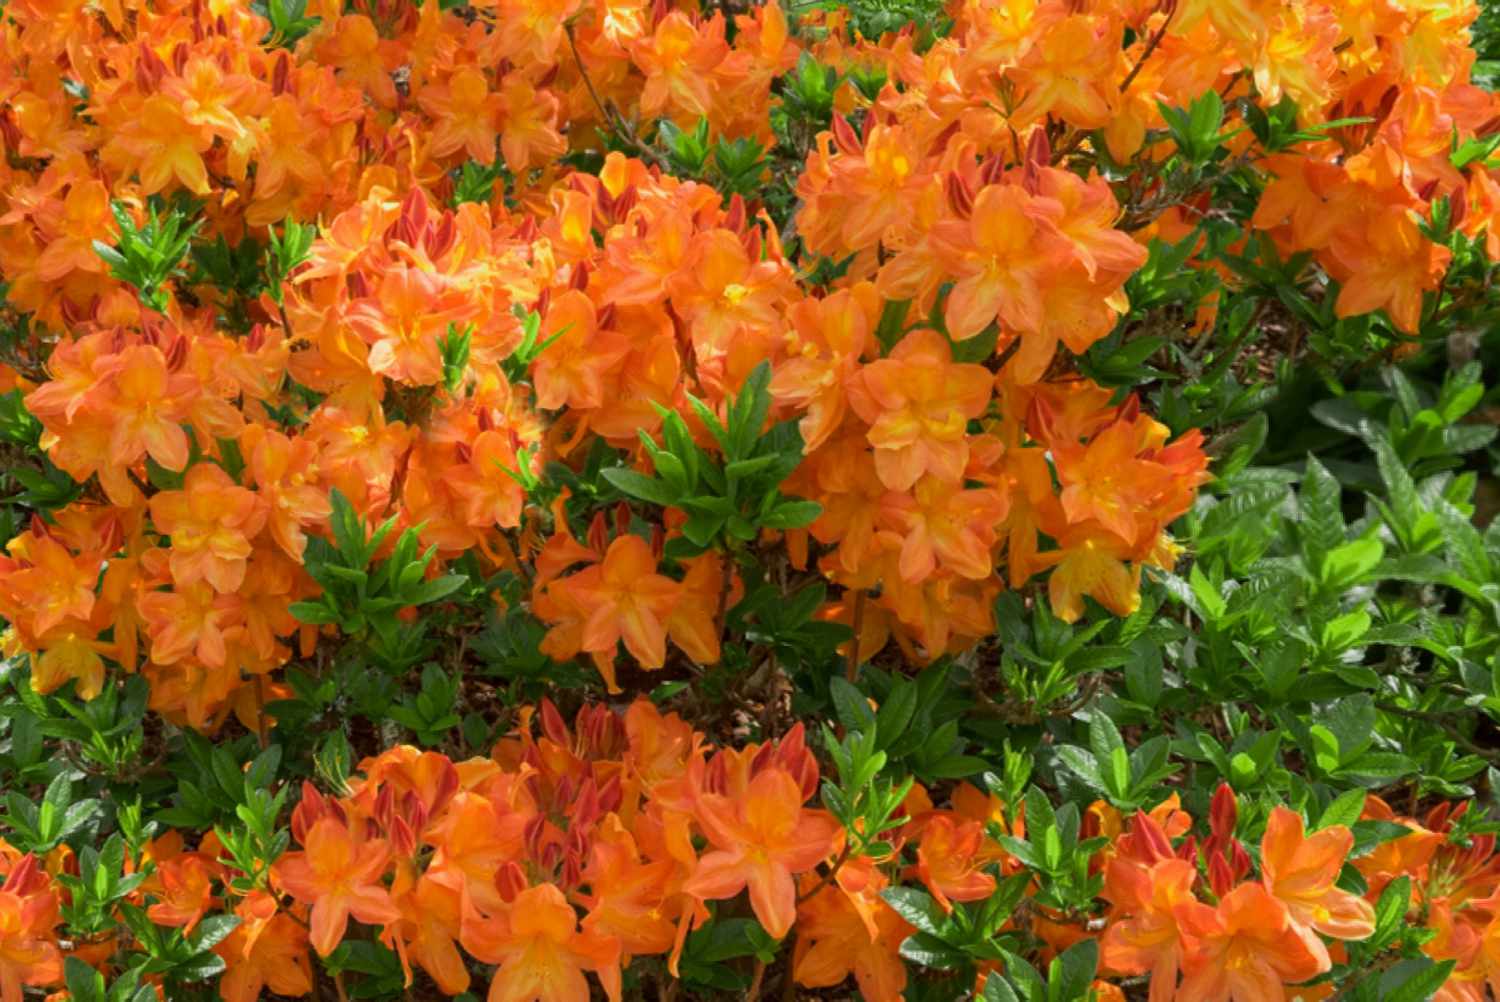 Arbusto en flor de azalea de Gibraltar con mechones de pétalos anaranjados en forma de embudo rodeados de hojas